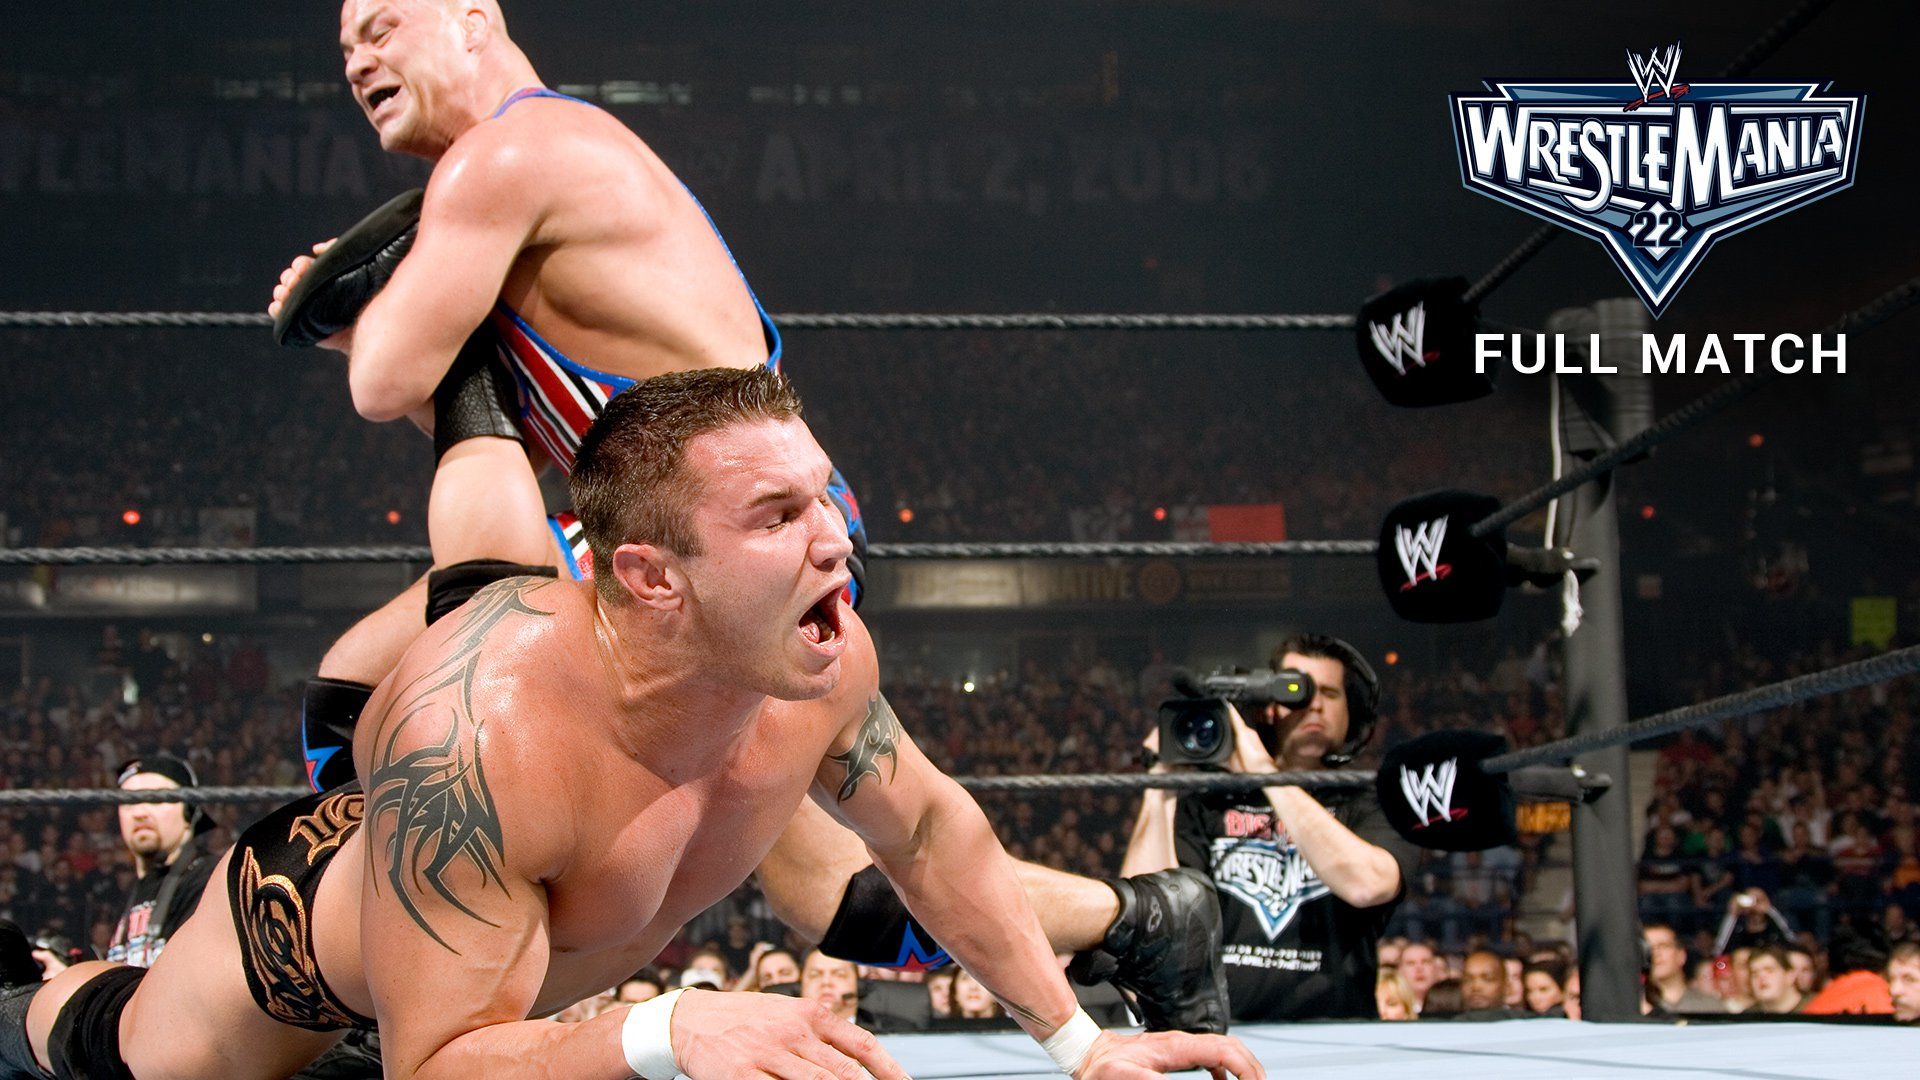 Orton vs Angle vs Mysterio